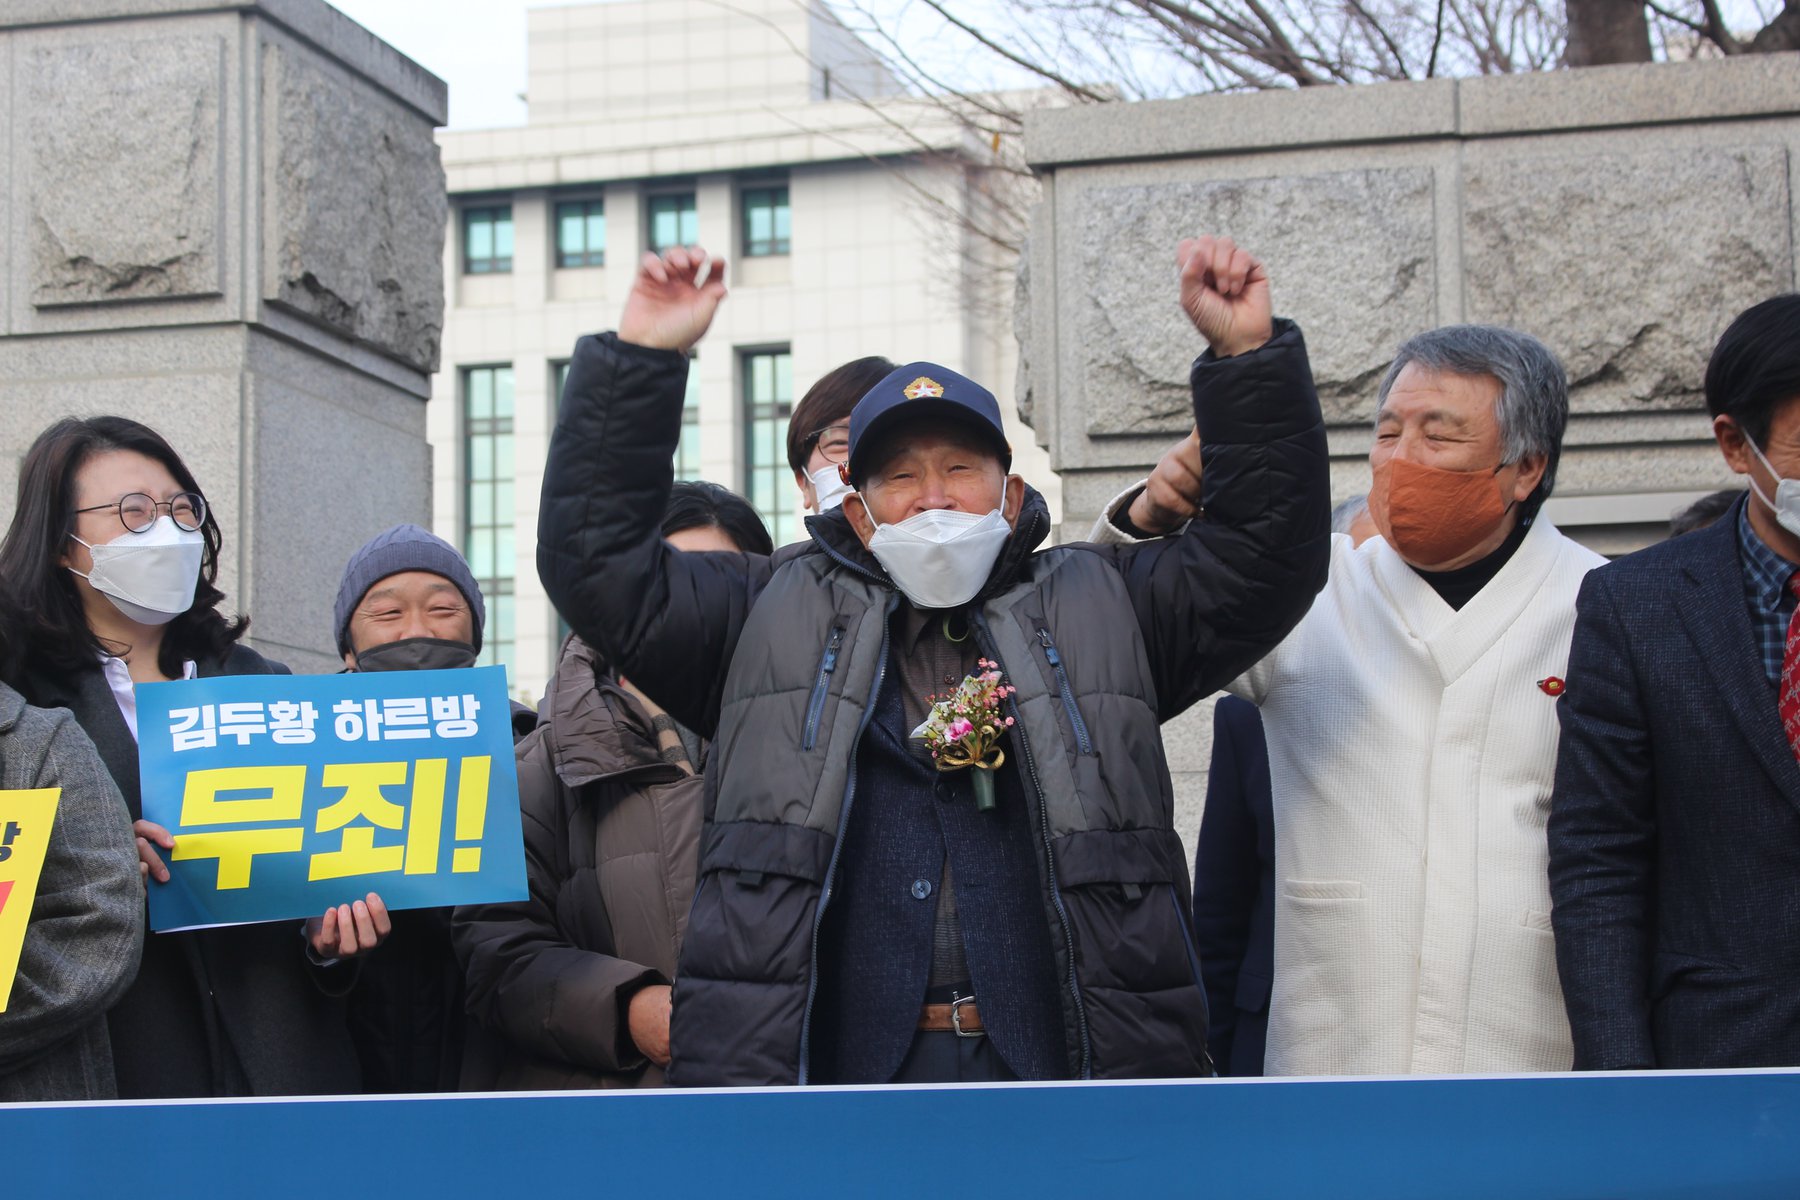 2020년 12월 7일 열린 재심 재판에서 김두황 할아버지가 72년만에 무죄 선고를 받고 만세를 부르고 있습니다.